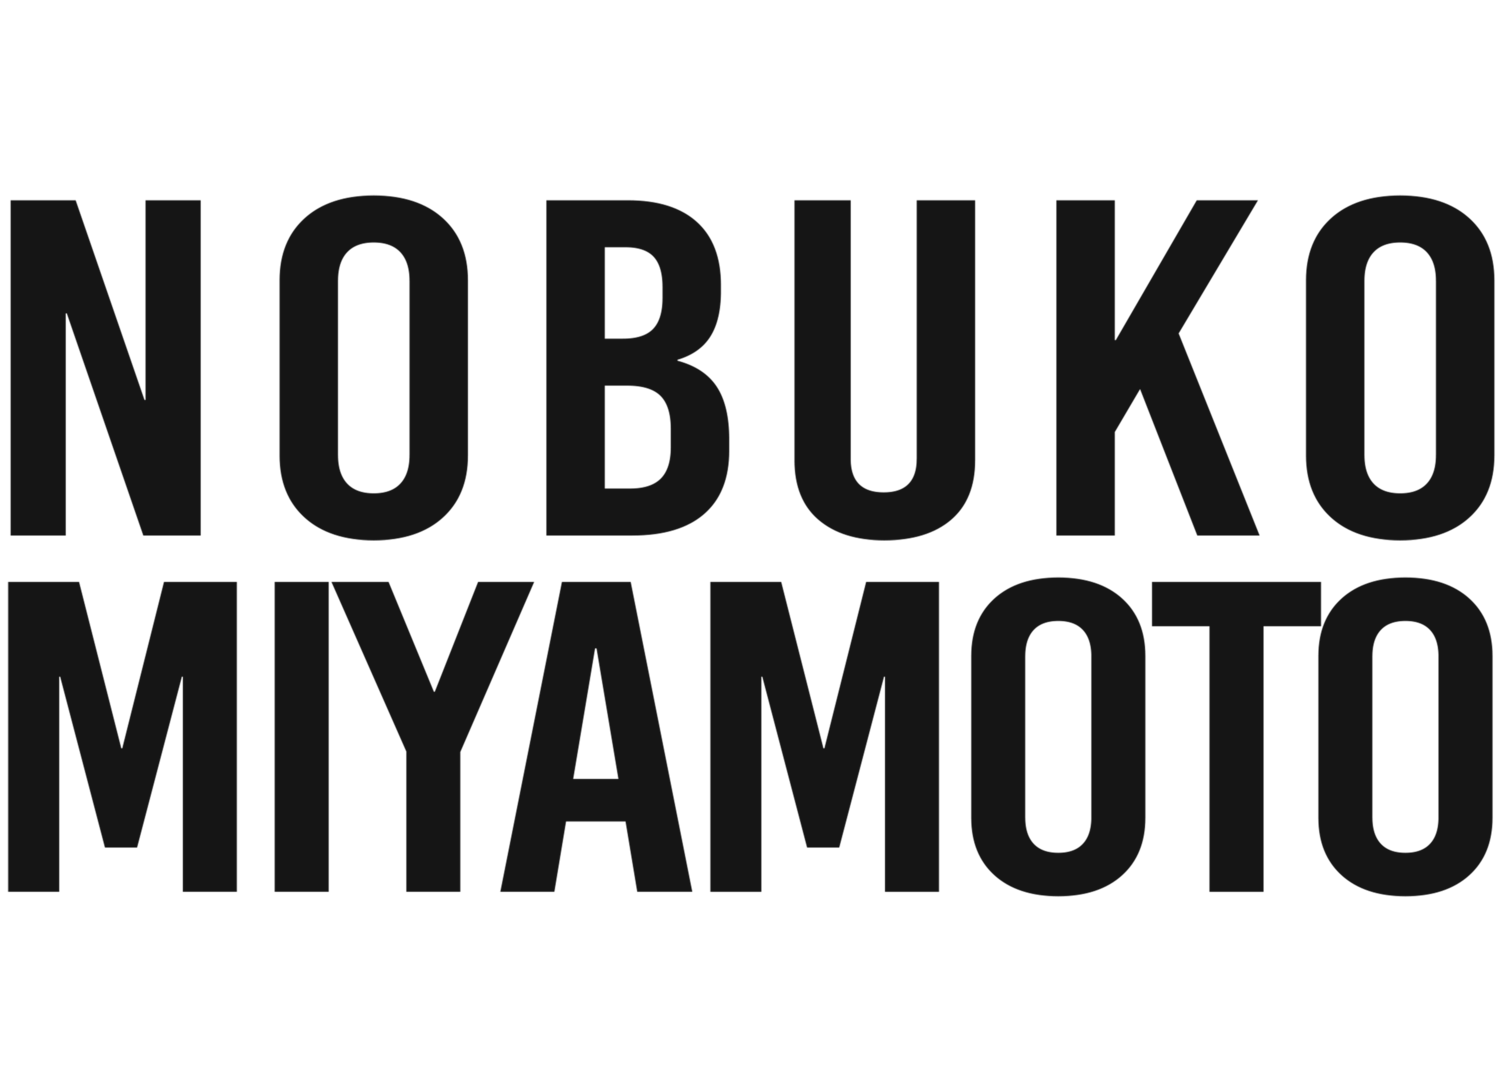 Nobuko Miyamoto